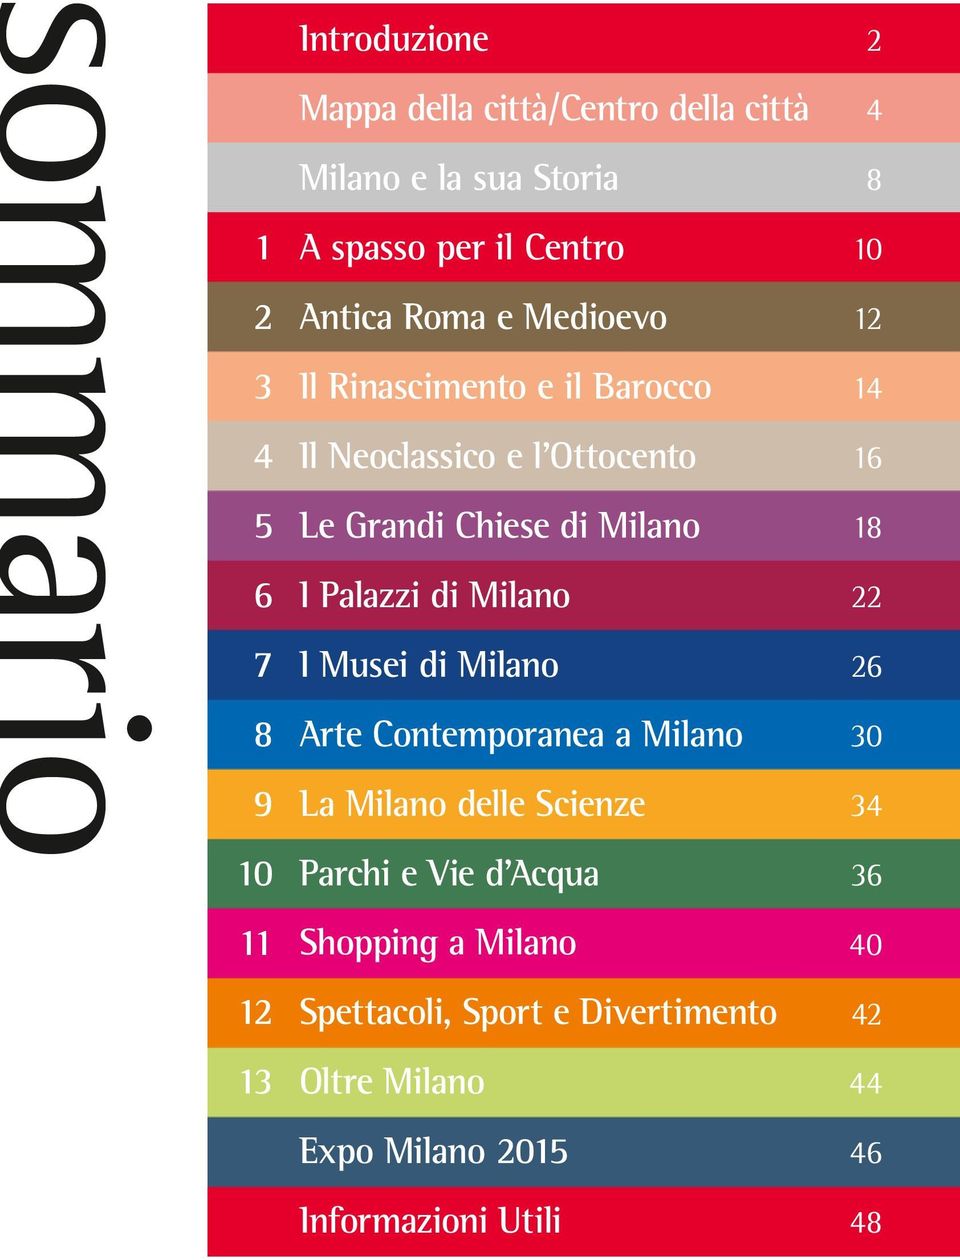 Milano I Musei di Milano Arte Contemporanea a Milano La Milano delle Scienze 4 8 10 1 14 16 18 6 0 4 10 Parchi e Vie d